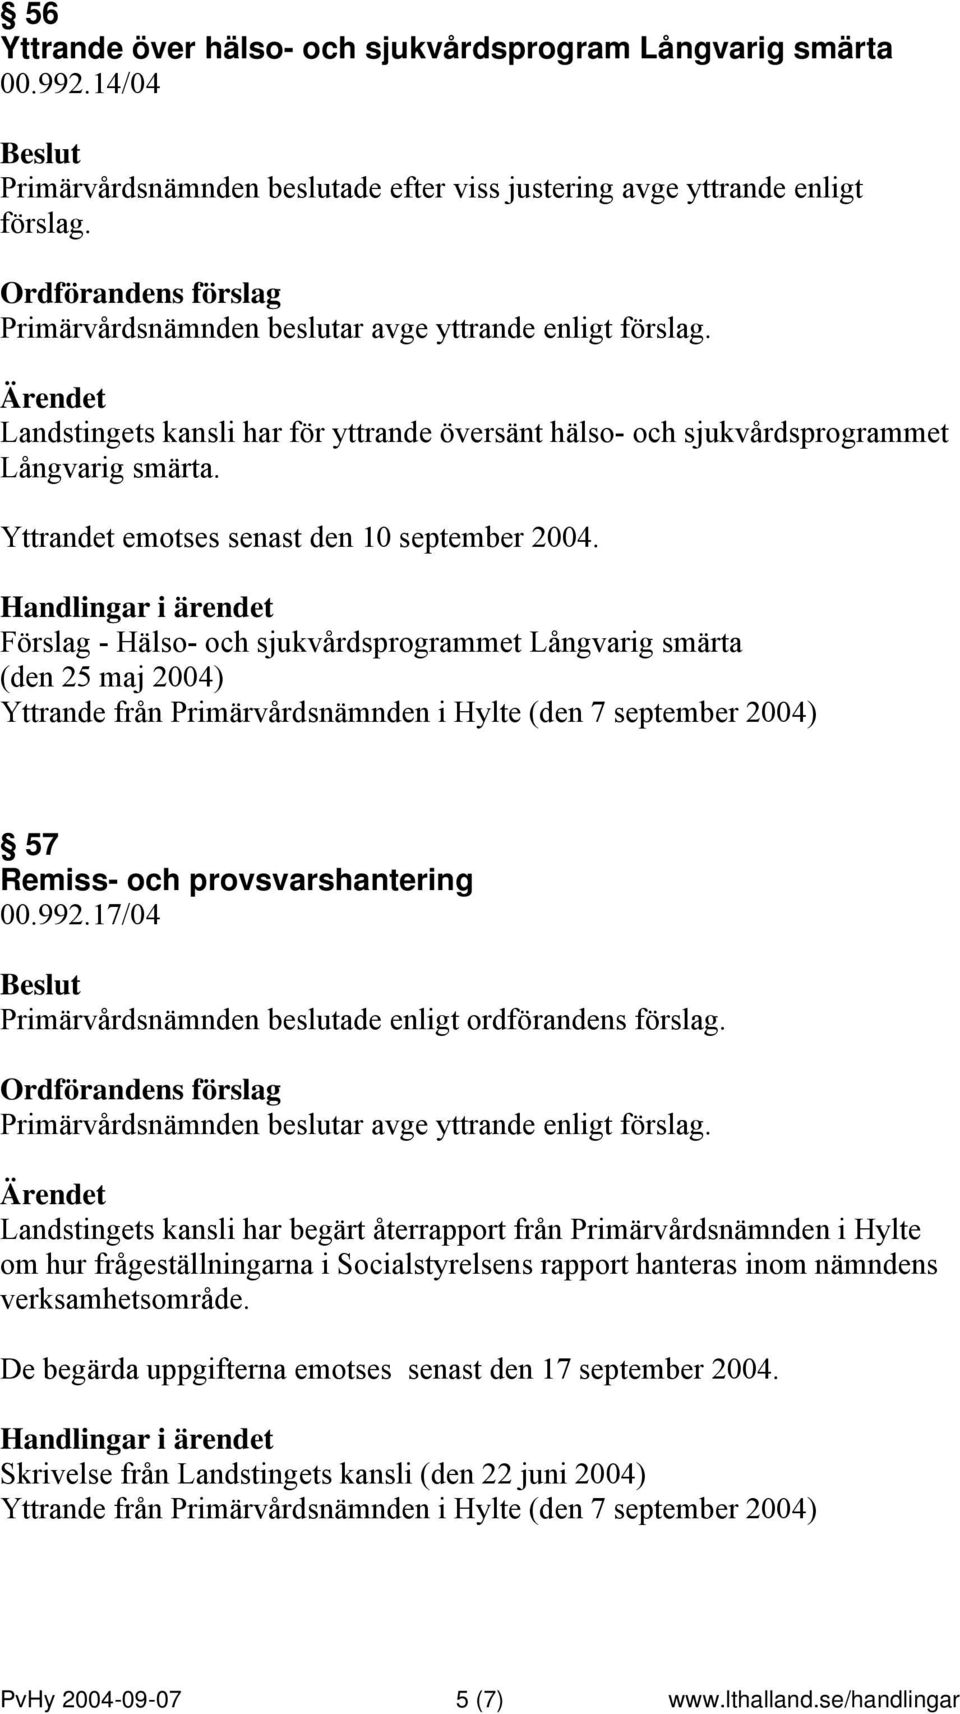 Handlingar i ärendet Förslag - Hälso- och sjukvårdsprogrammet Långvarig smärta (den 25 maj 2004) Yttrande från Primärvårdsnämnden i Hylte (den 7 september 2004) 57 Remiss- och provsvarshantering 00.